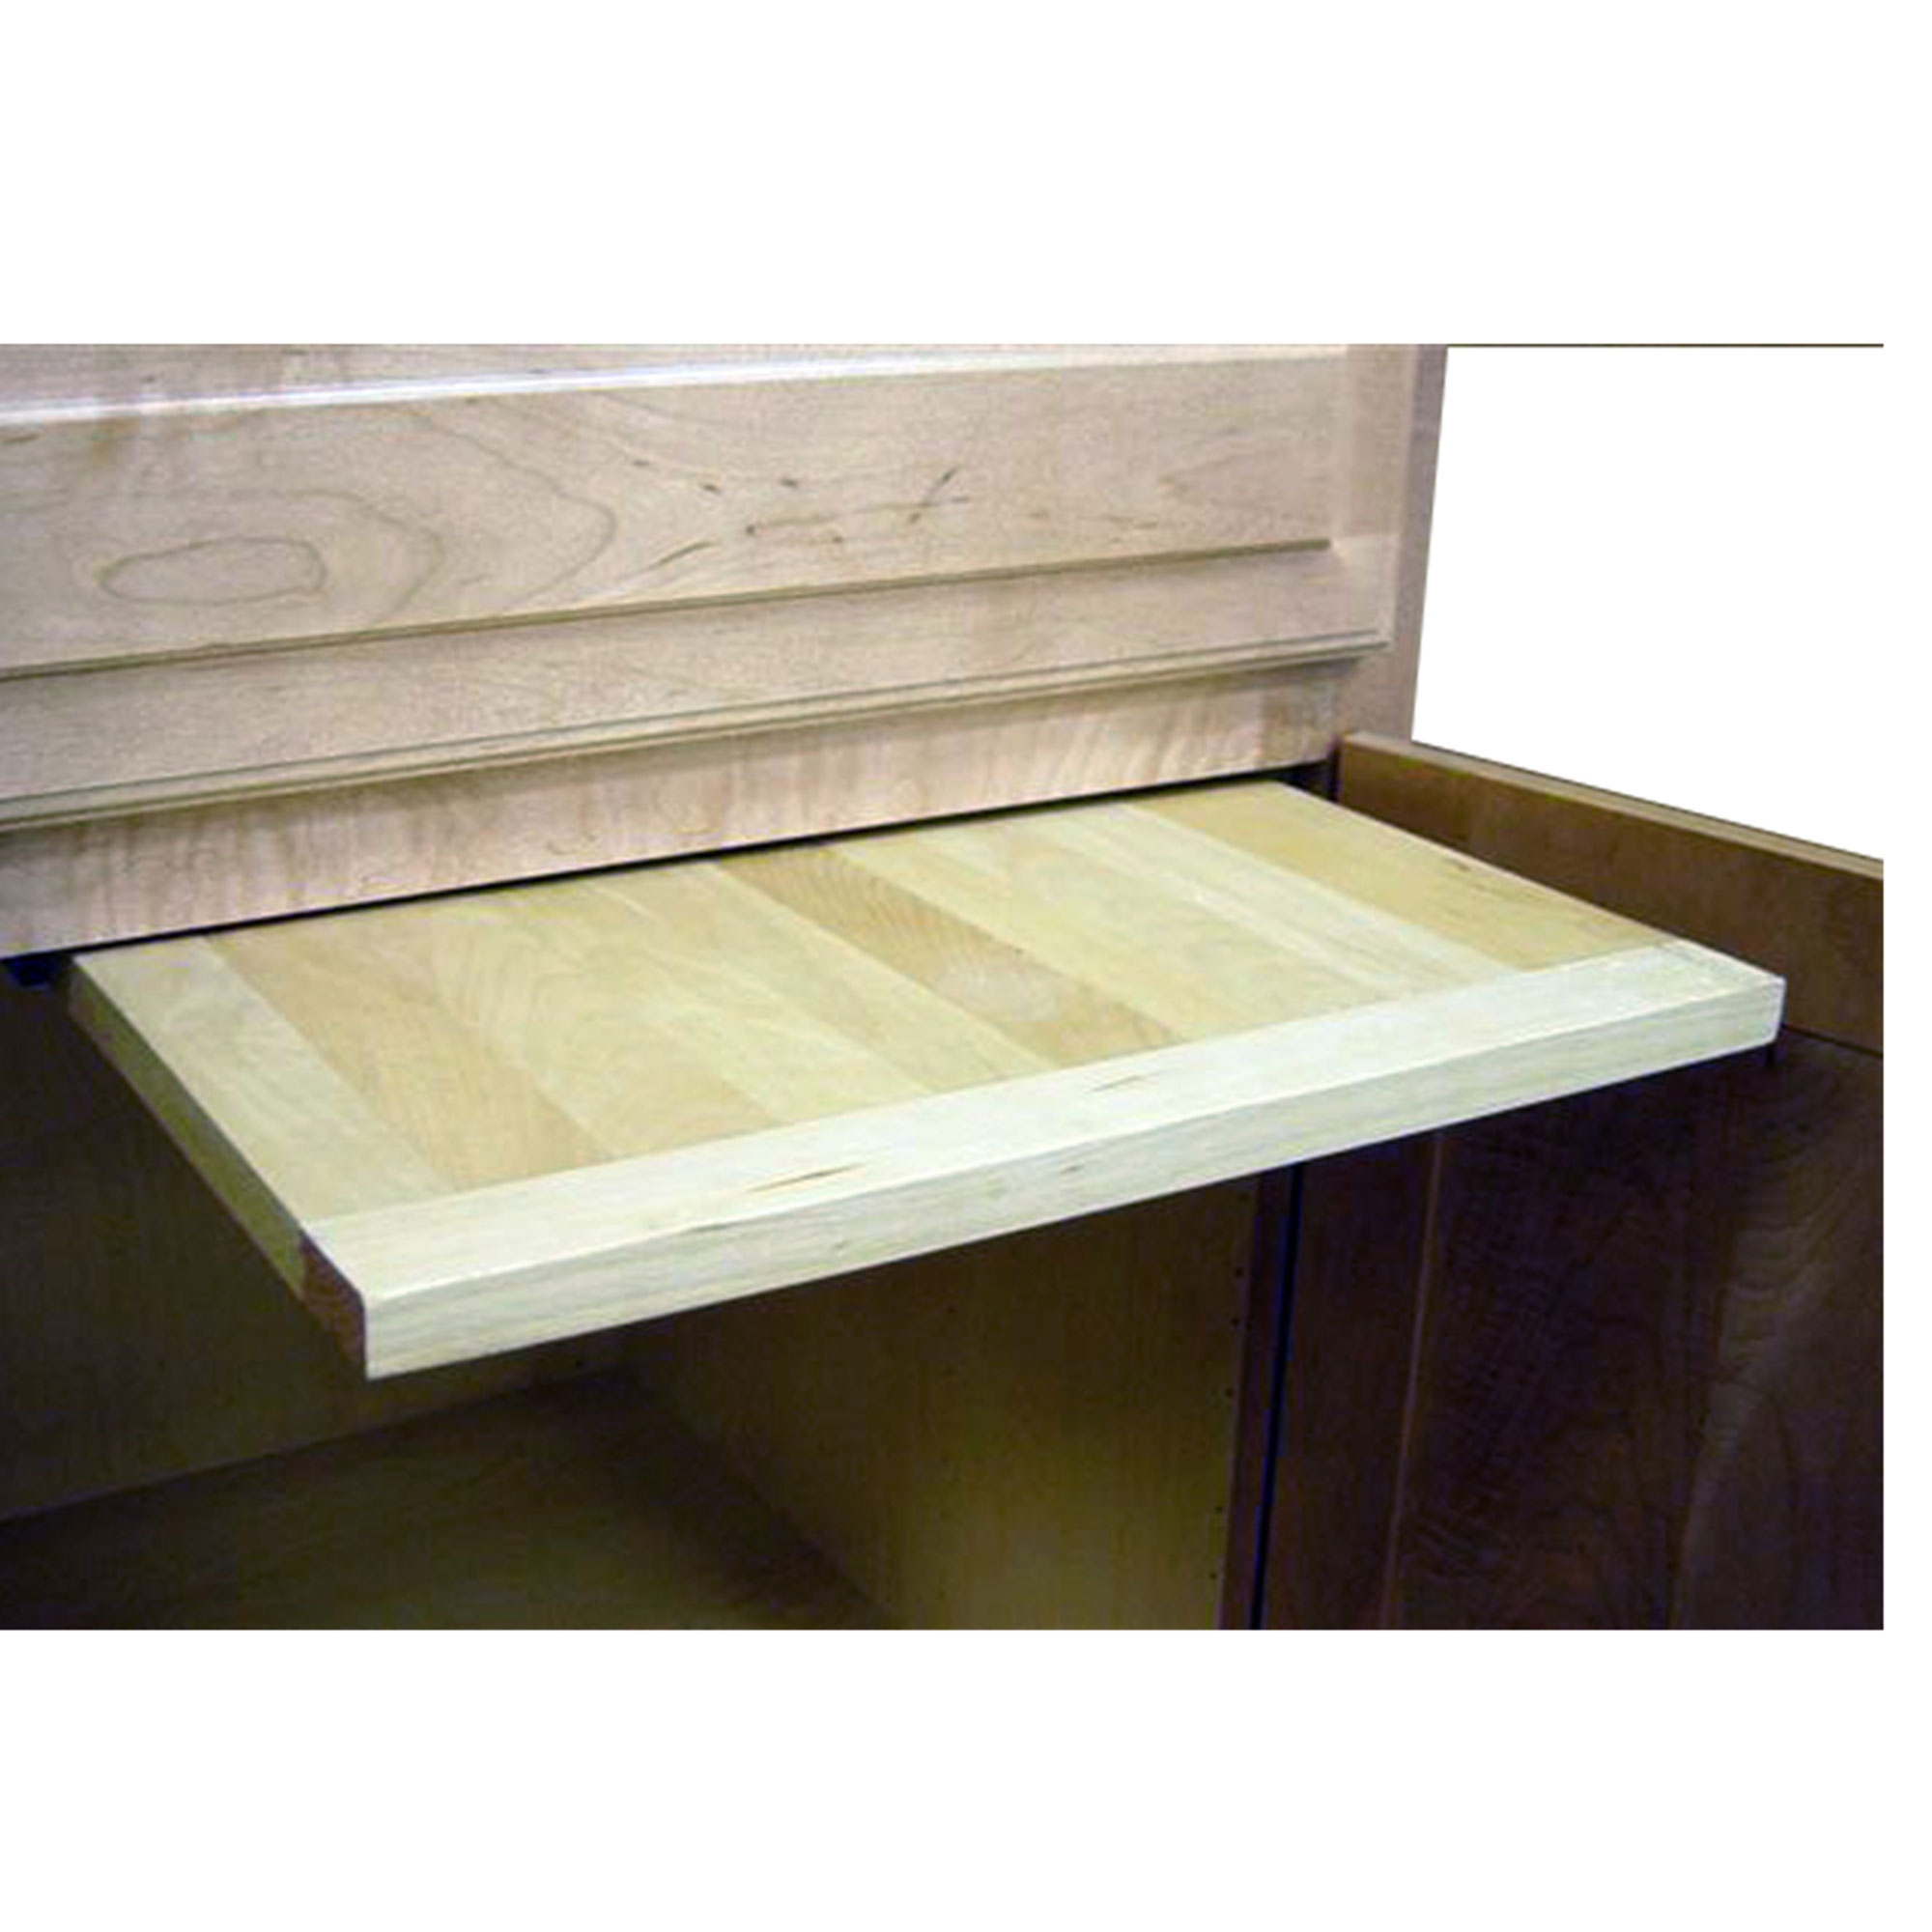 14 X 22 Inch Ez Slide N Store Wood Cutting Board